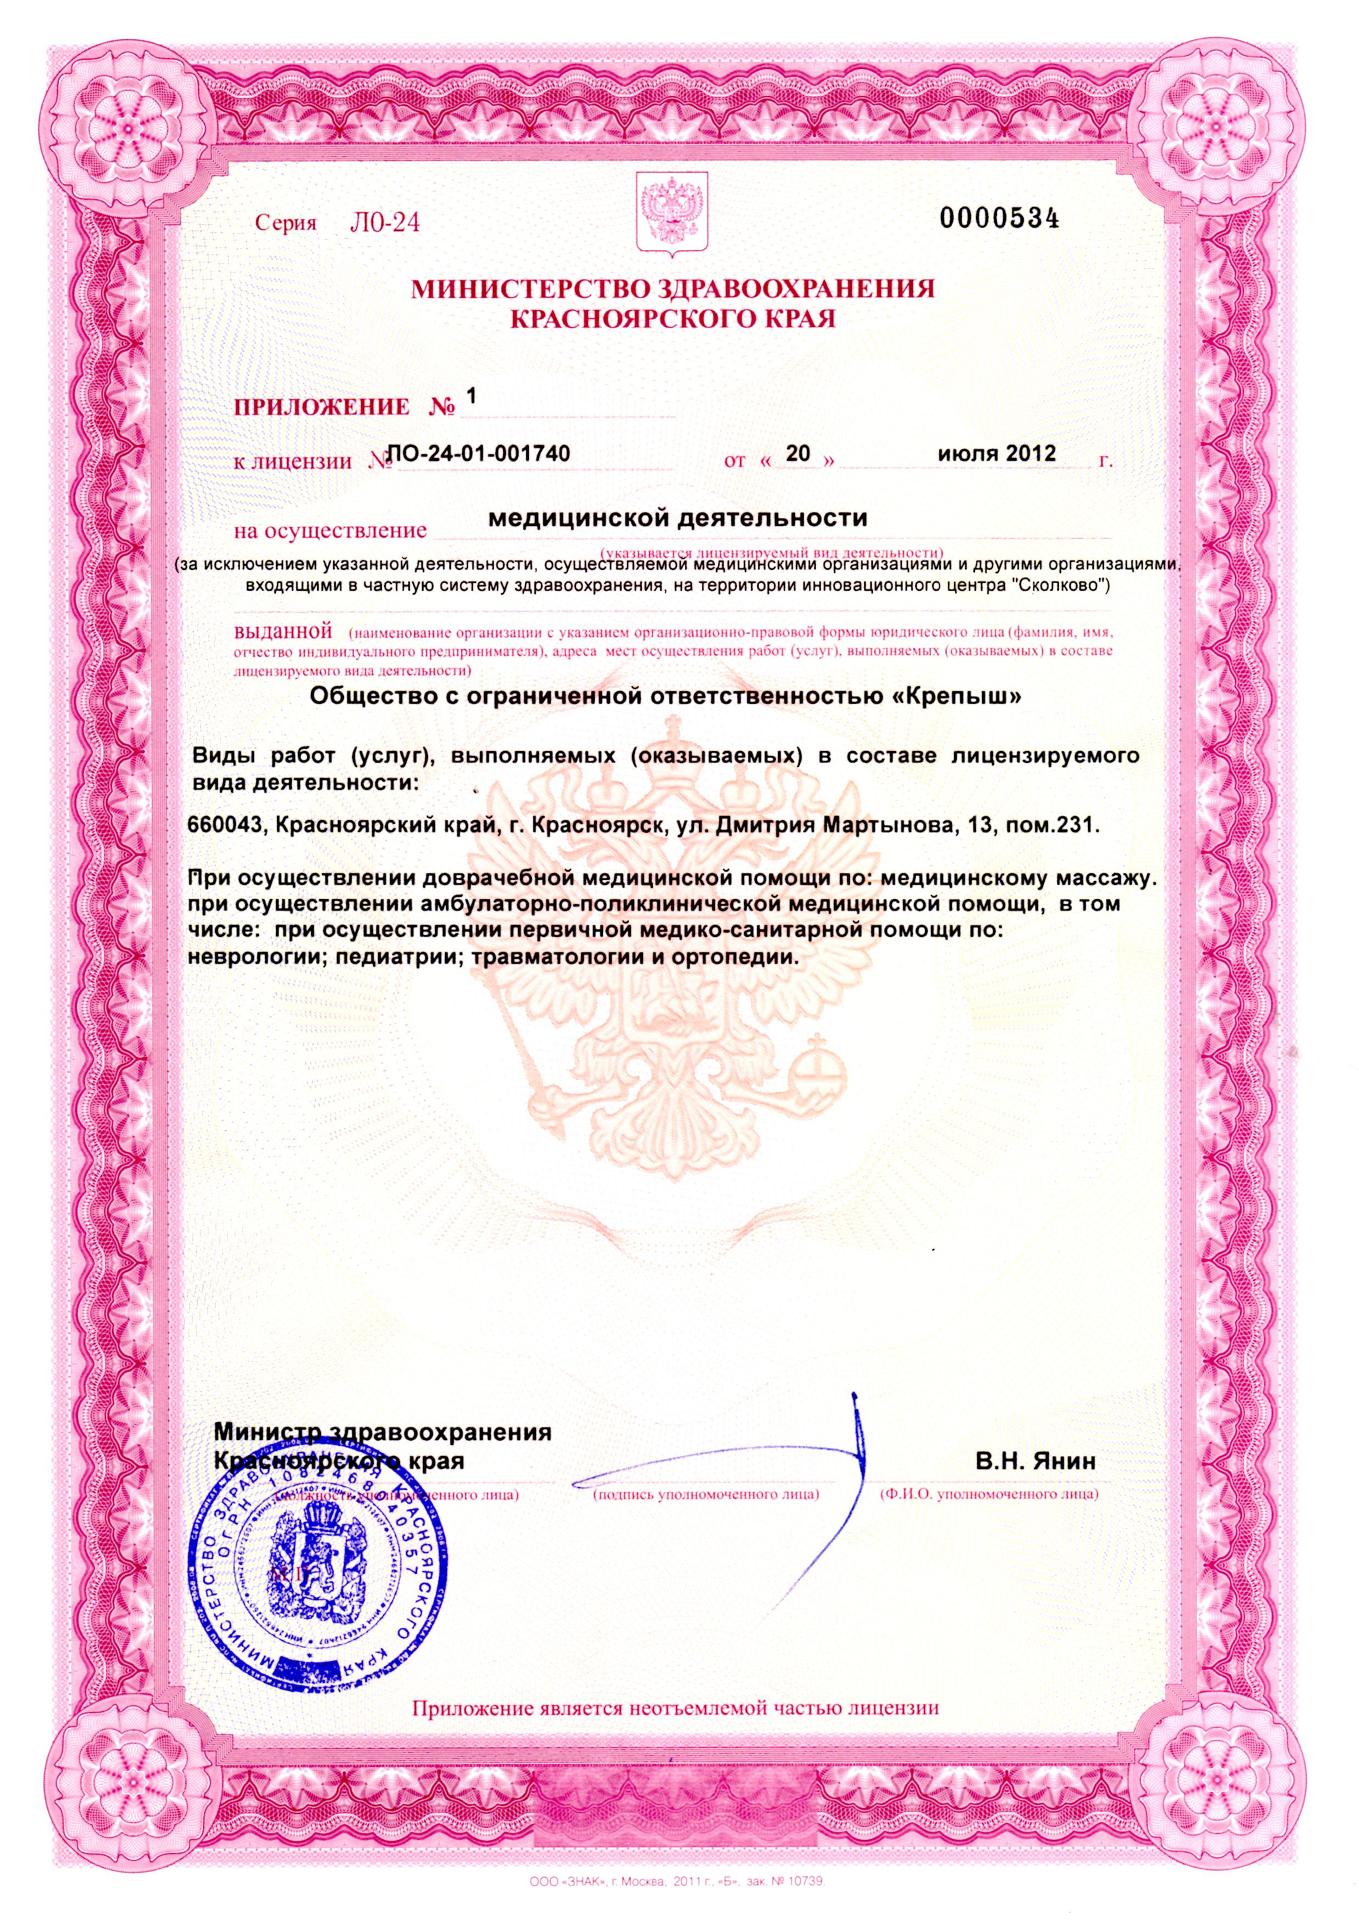 Лицензия медицинской деятельности центра "Крепыш"